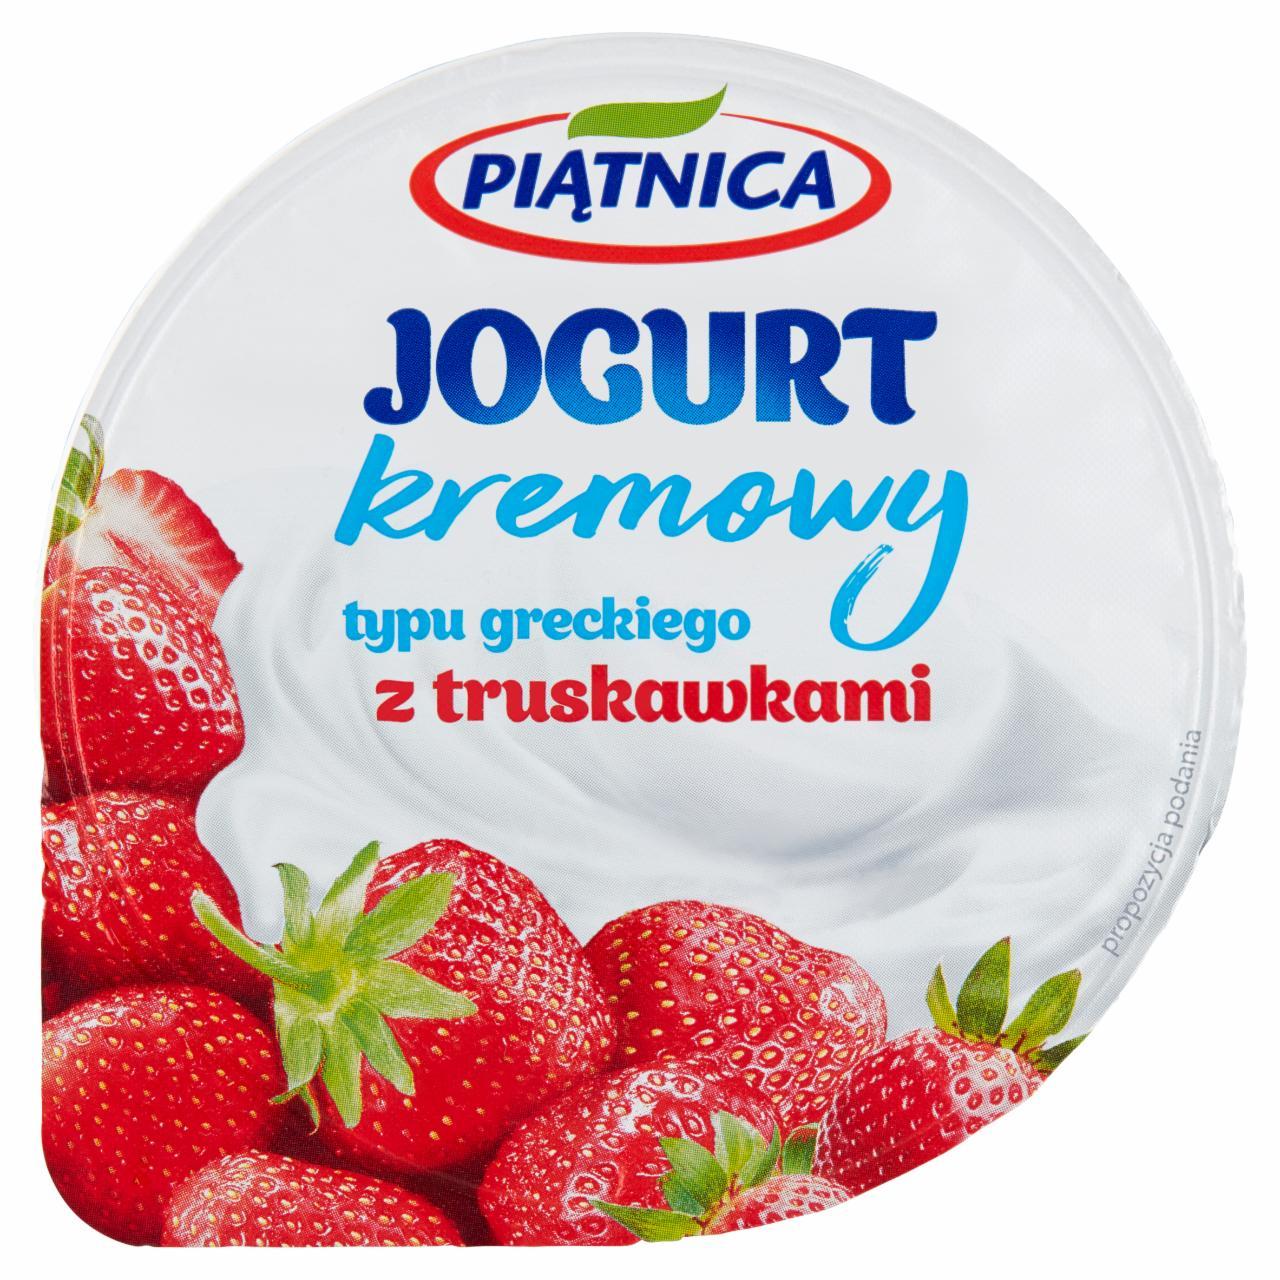 Zdjęcia - Piątnica Jogurt kremowy typu greckiego z truskawkami 150 g